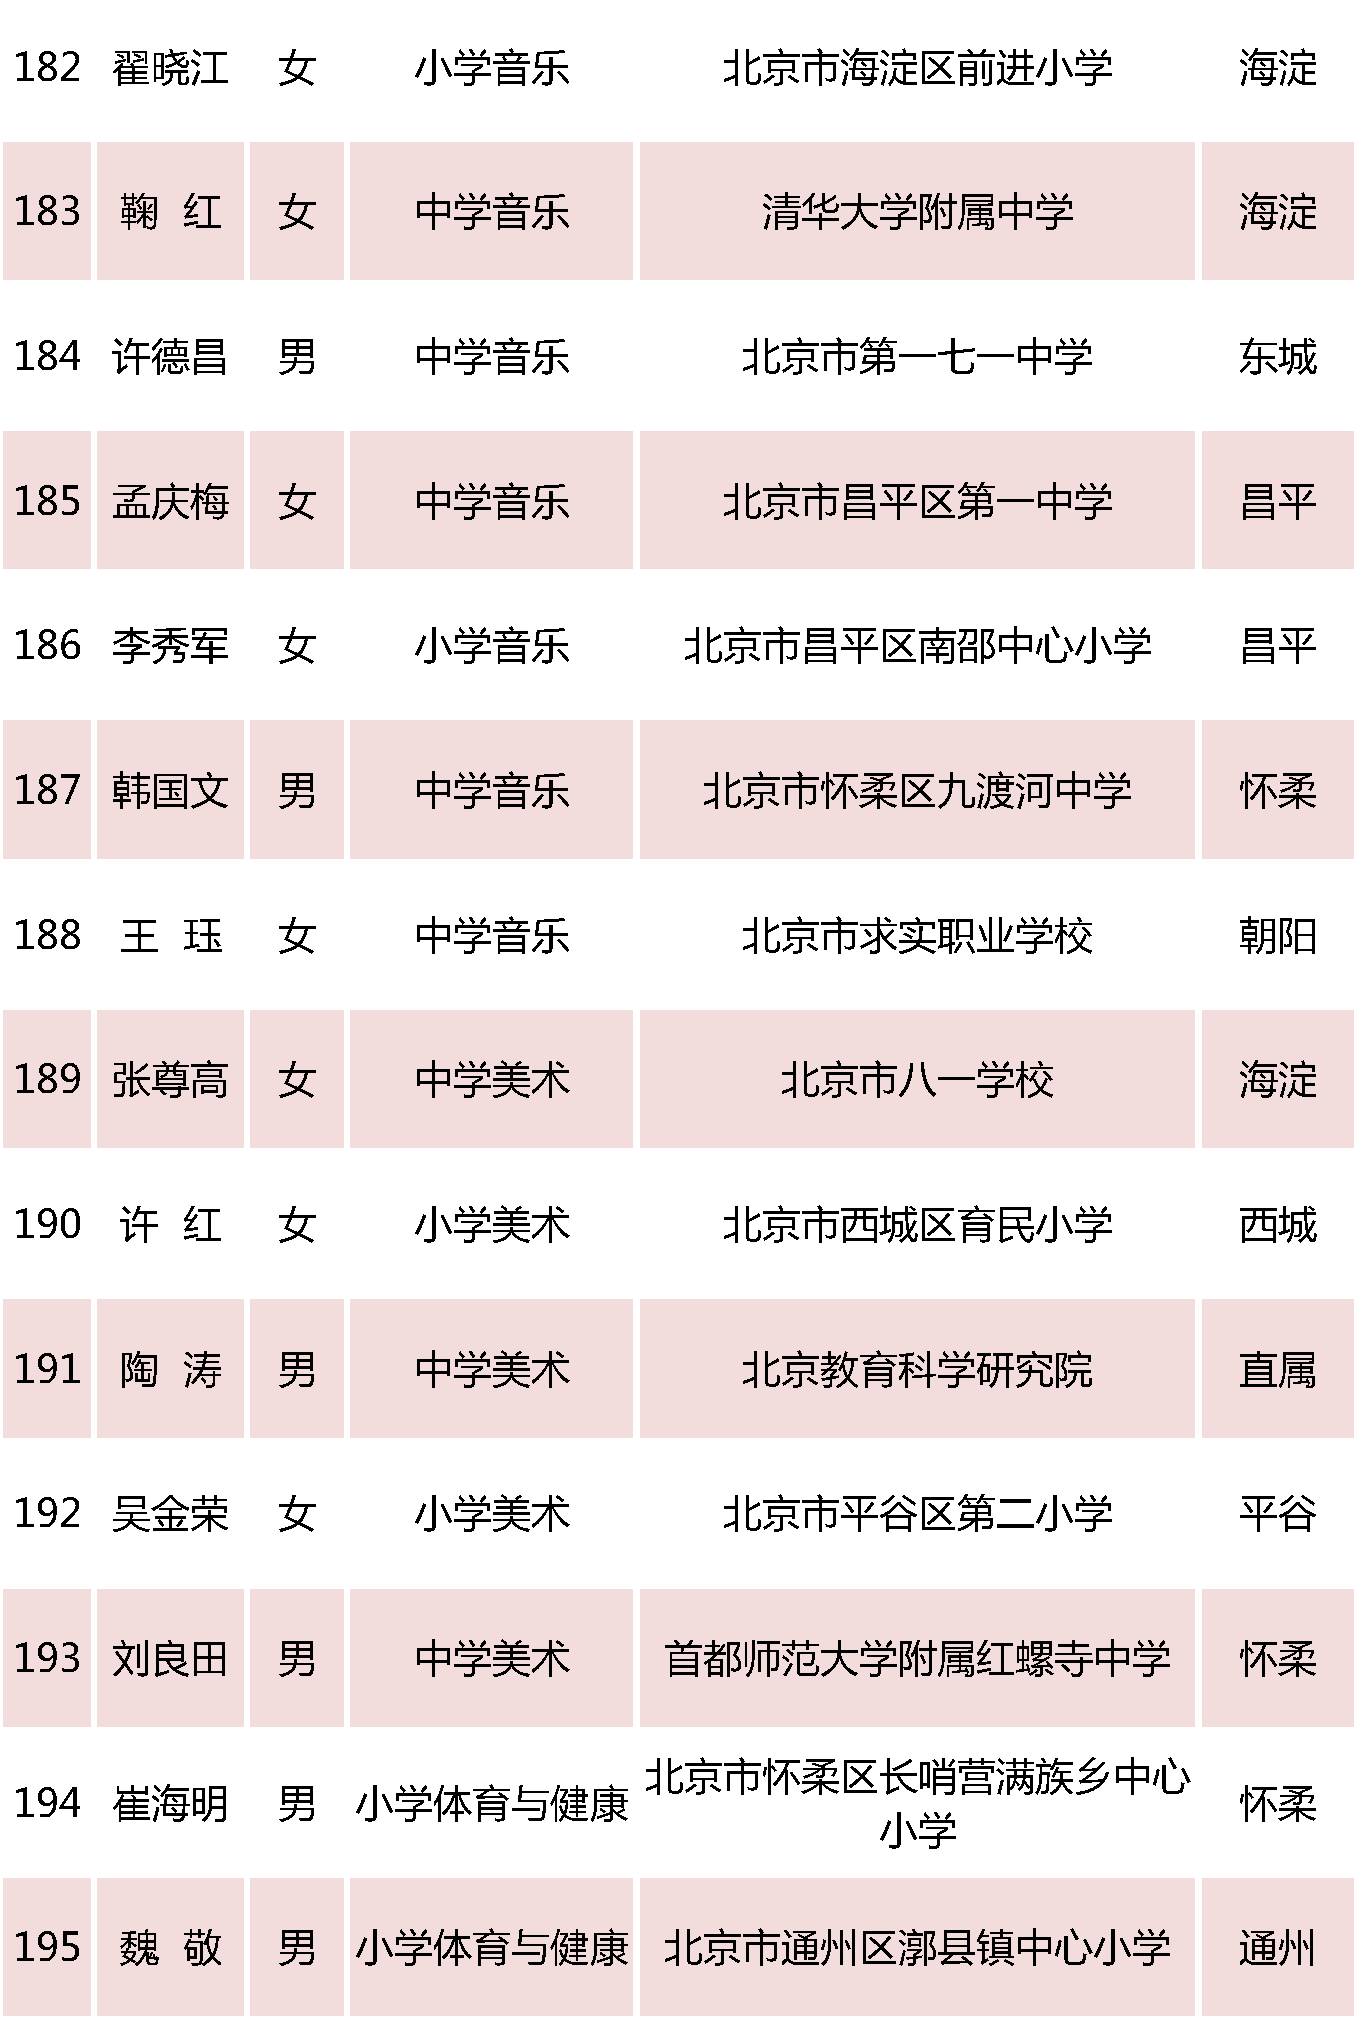 北京特级教师名单16